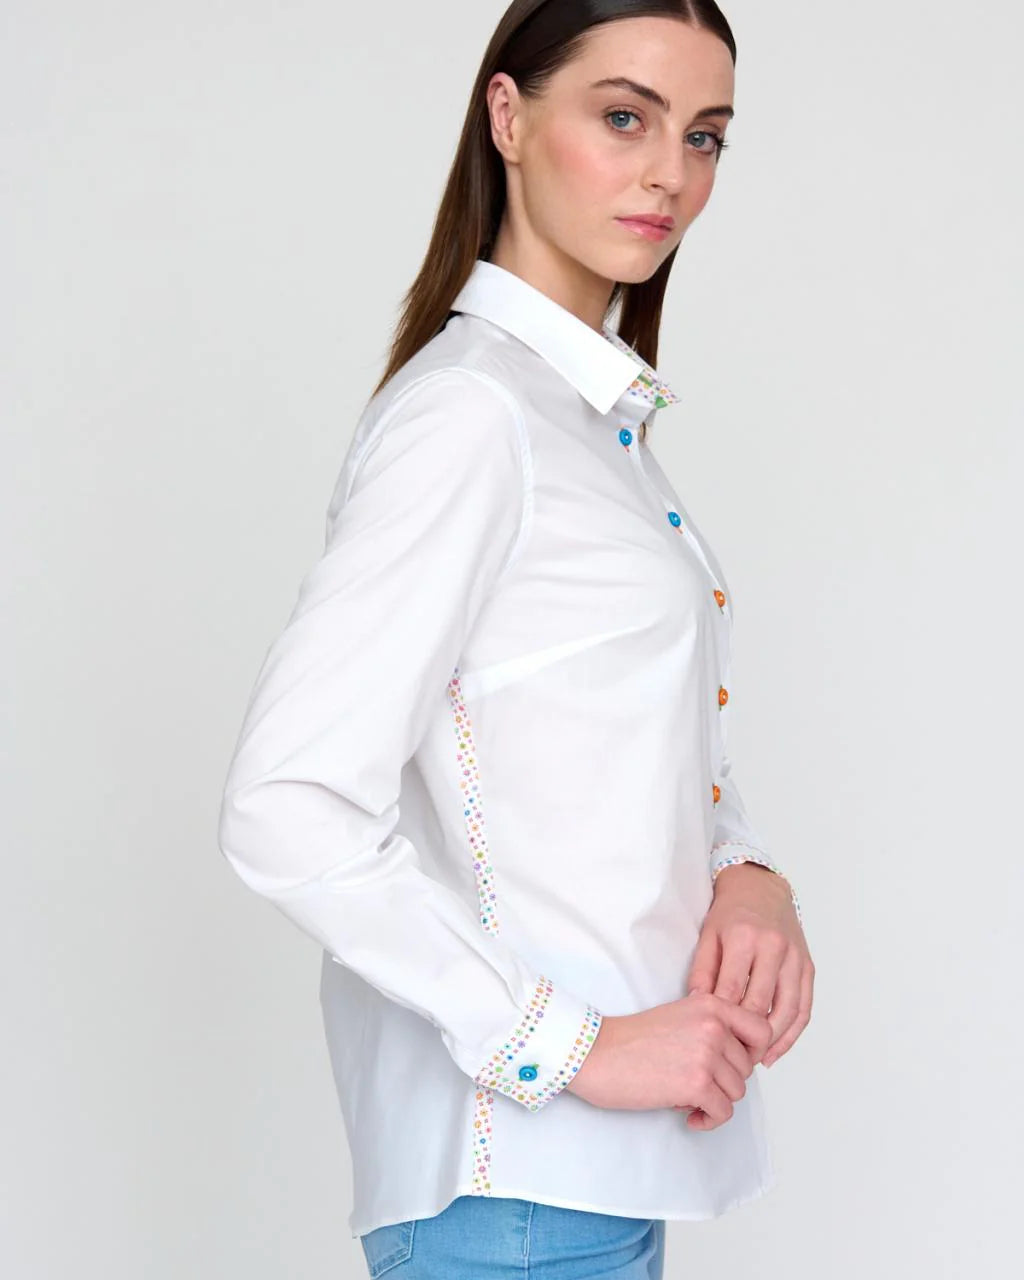 Bariloche Condado White Stretch Cotton Shirt With Multi-colour Cuff Details